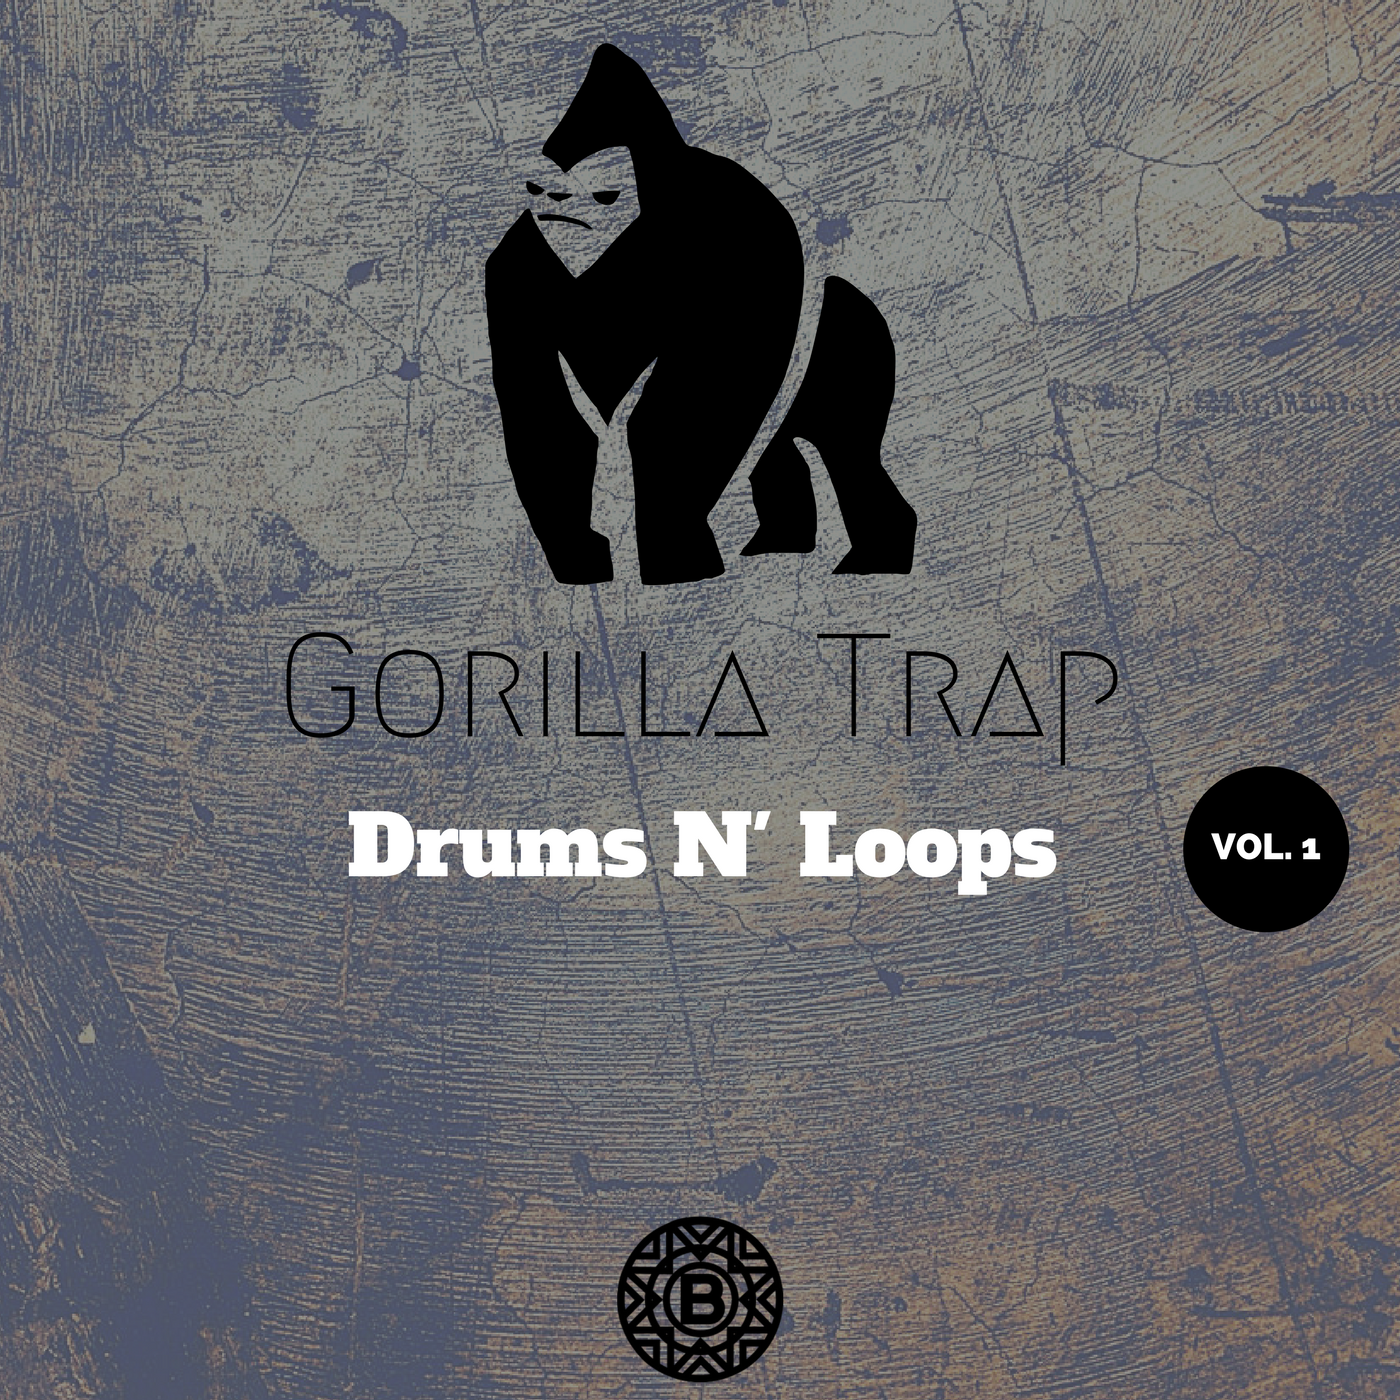 Gorilla Trap - Album by Trap Gorilla